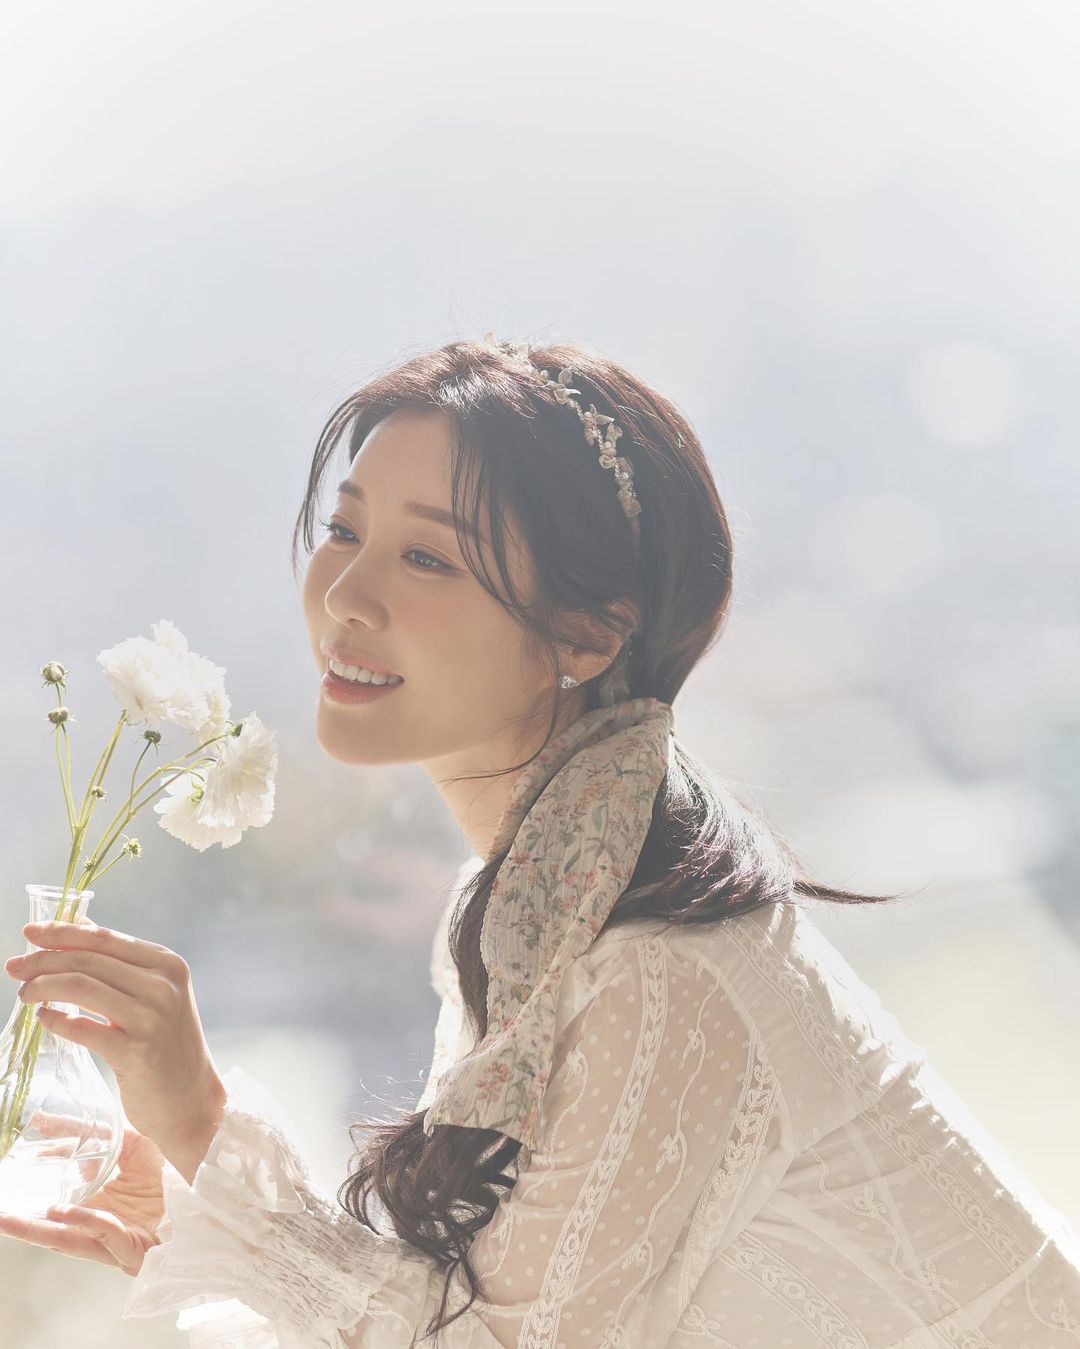 Nabi Releases MV Teaser for New Song 'Spring Star Flower'... Full of Positive Energy